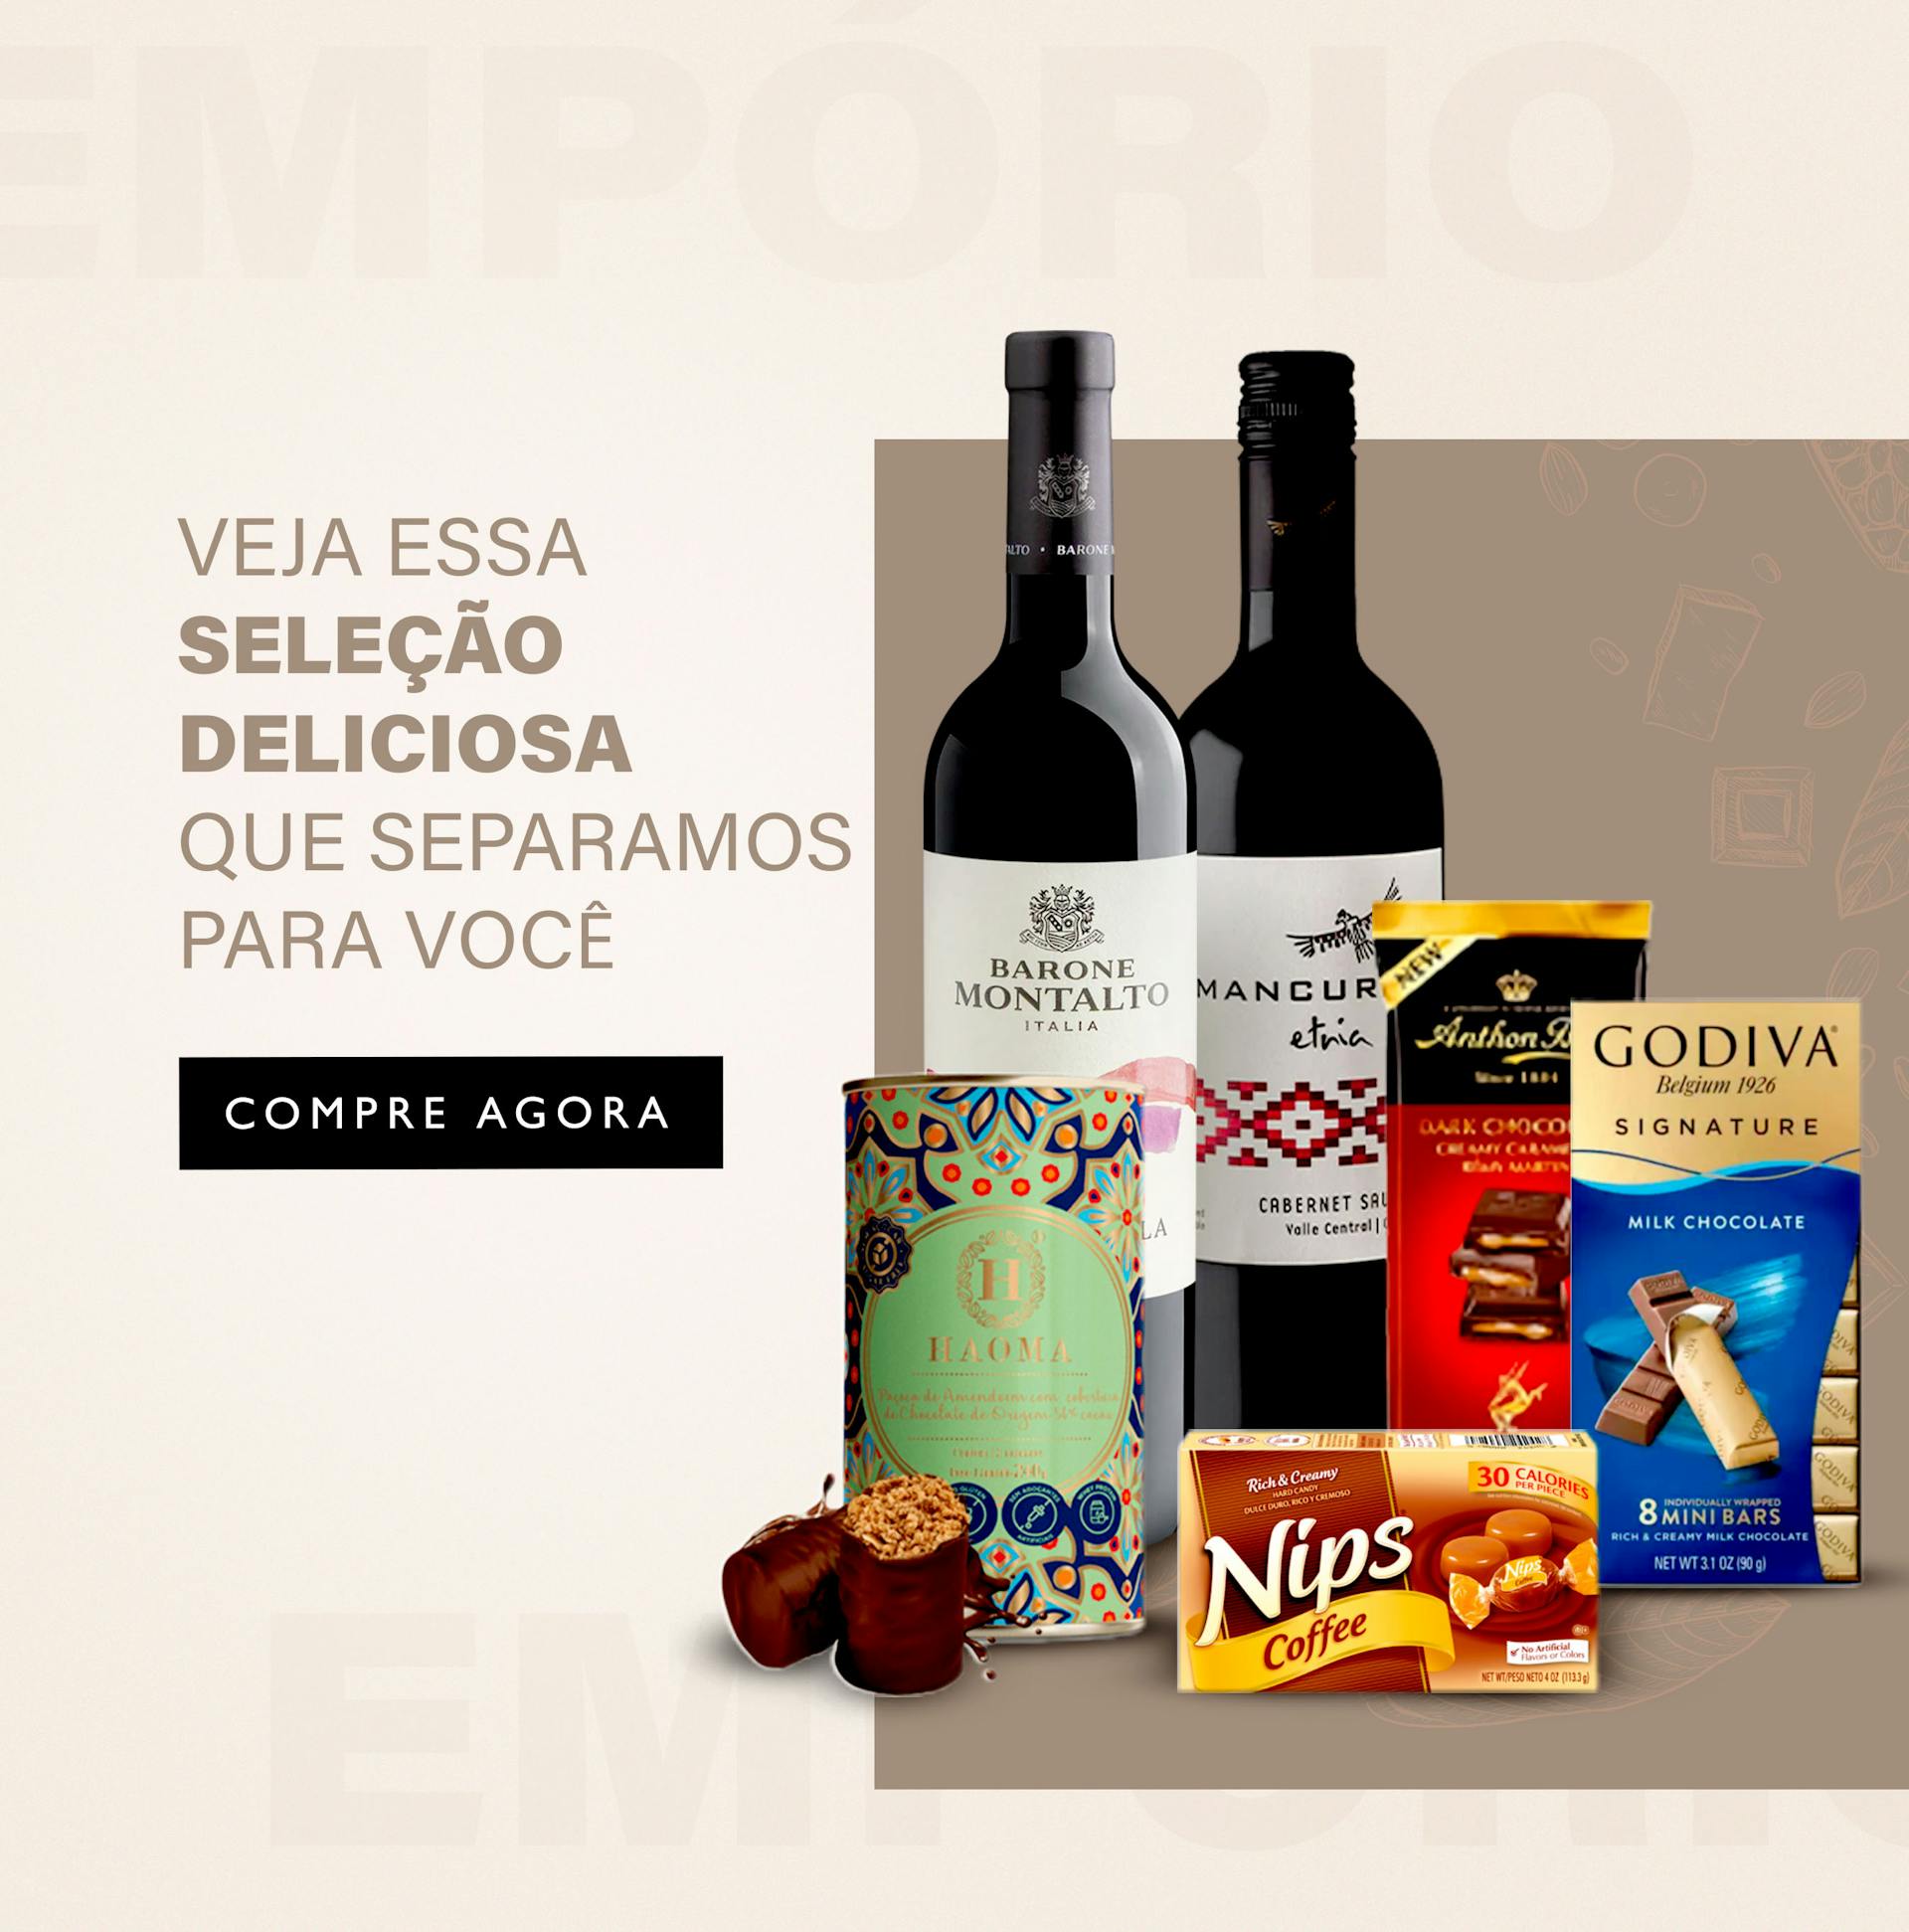 MyStore do Shopping Eldorado, em São Paulo, será aberta nesta quarta-feira  - MacMagazine